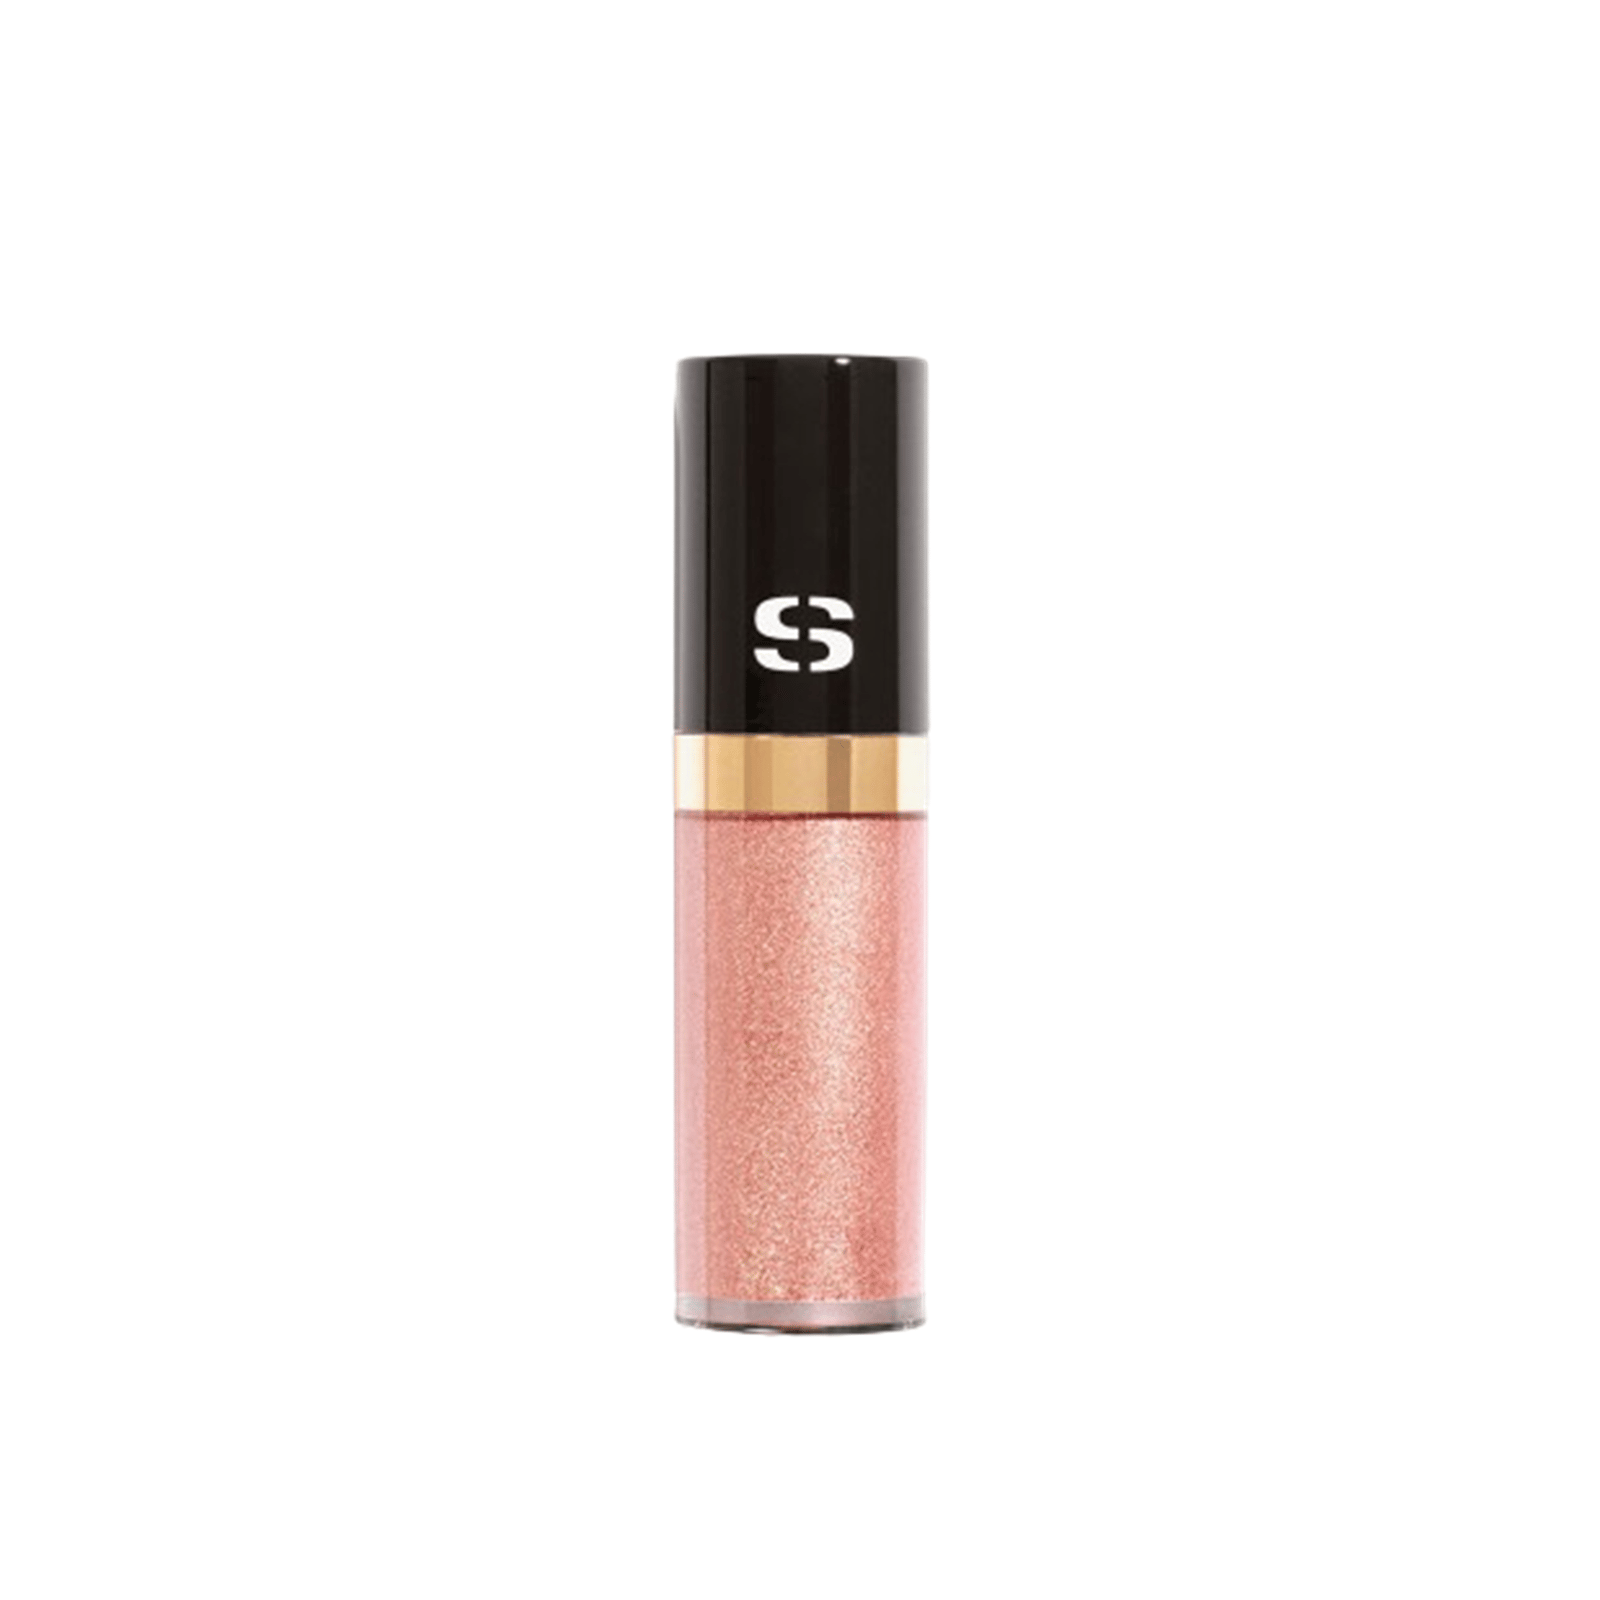 Sisley Paris Longwear Liquid Eyeshadow 3 Pink Gold 6.5ml (0.21 fl oz)